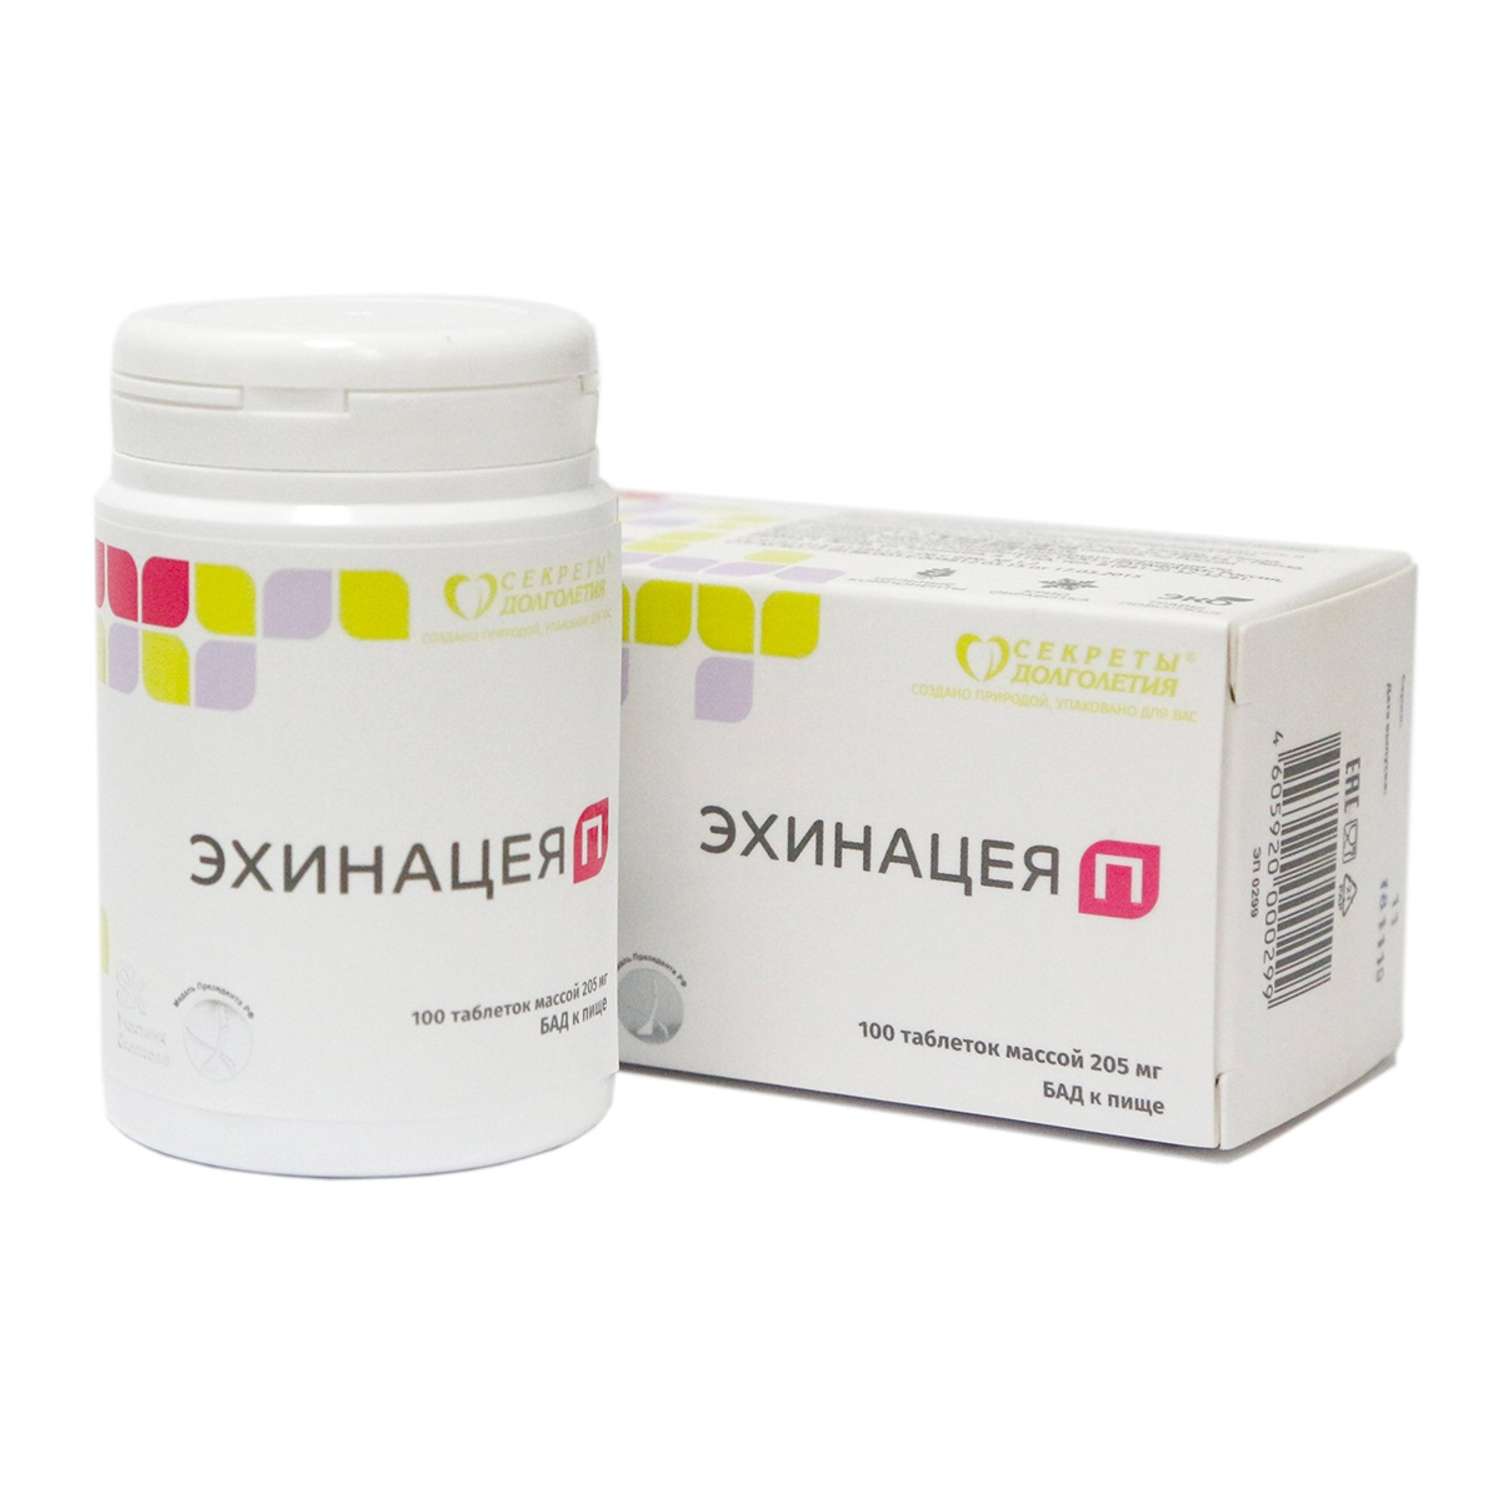 Витаминный комплекс Парафарм Эхинацея П. 2 упаковки по 100 таблеток - фото 3